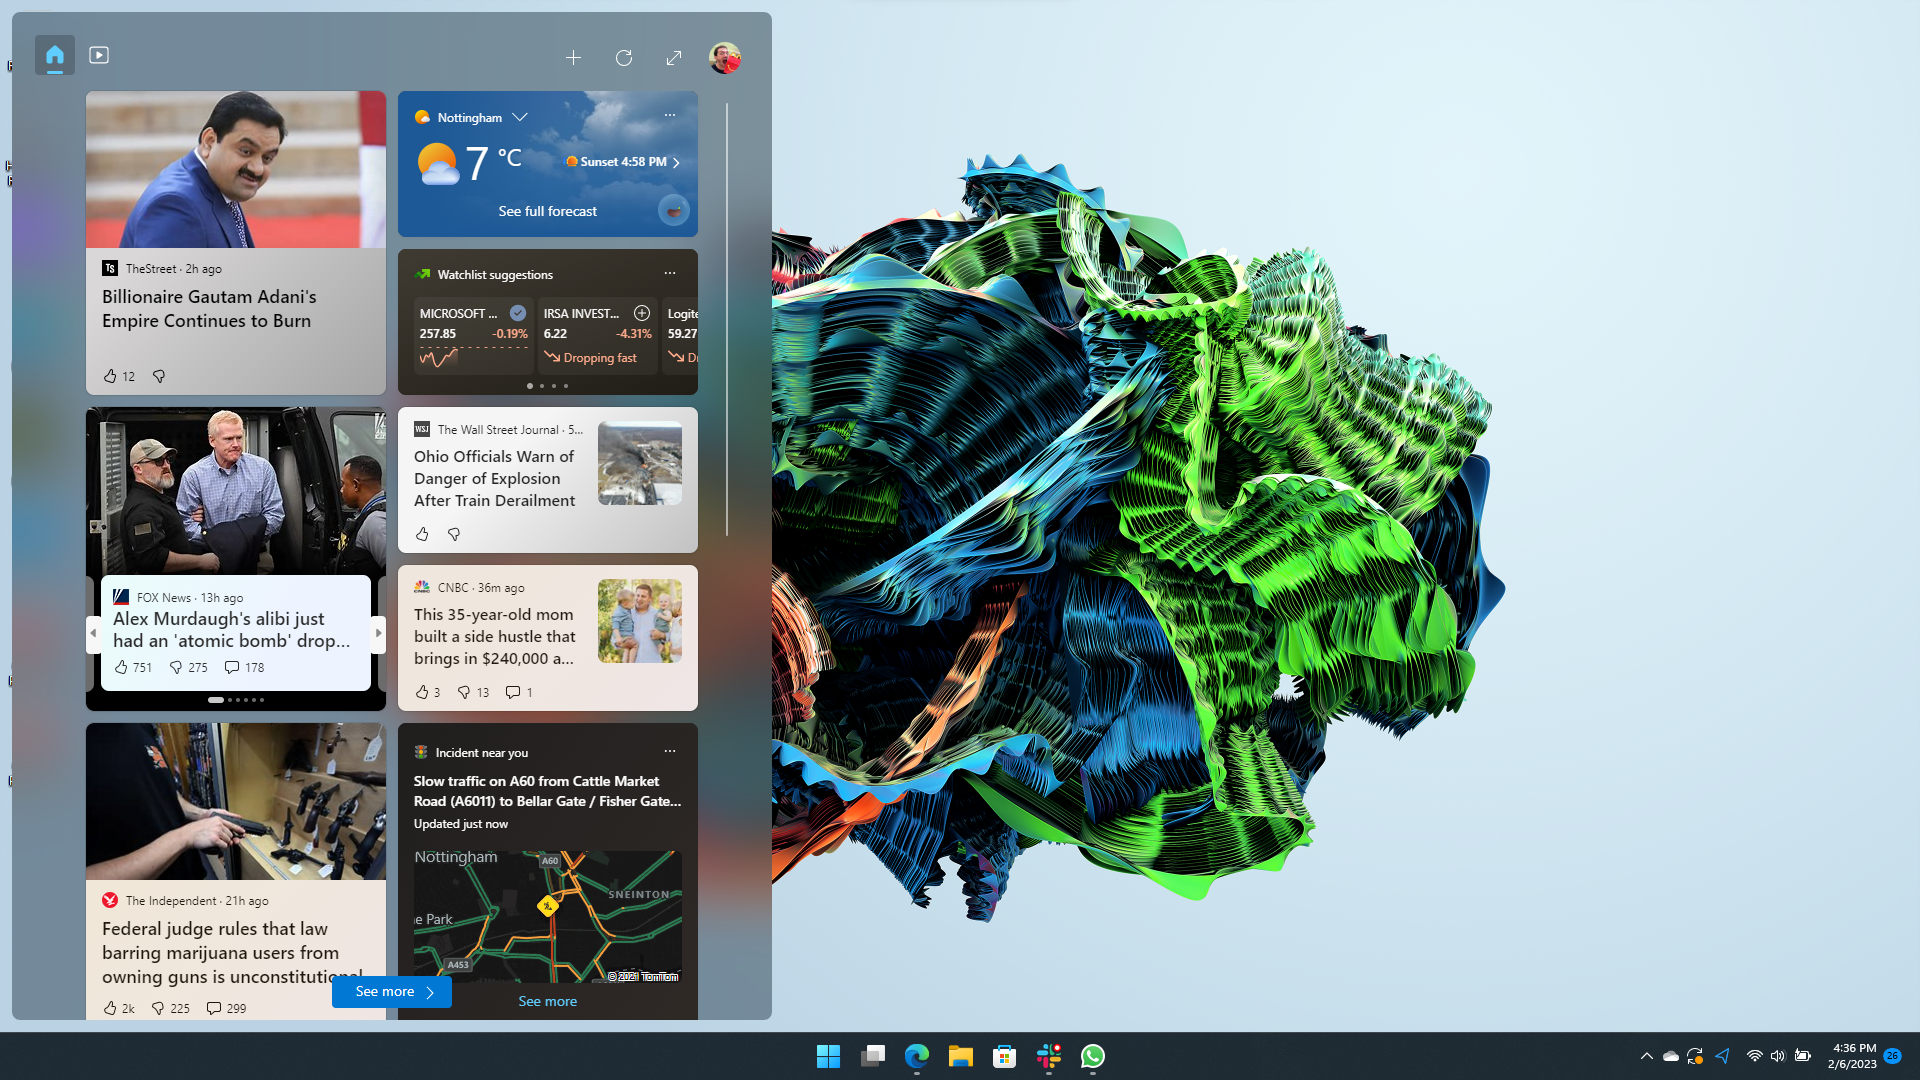 Panel de widgets de Windows 11